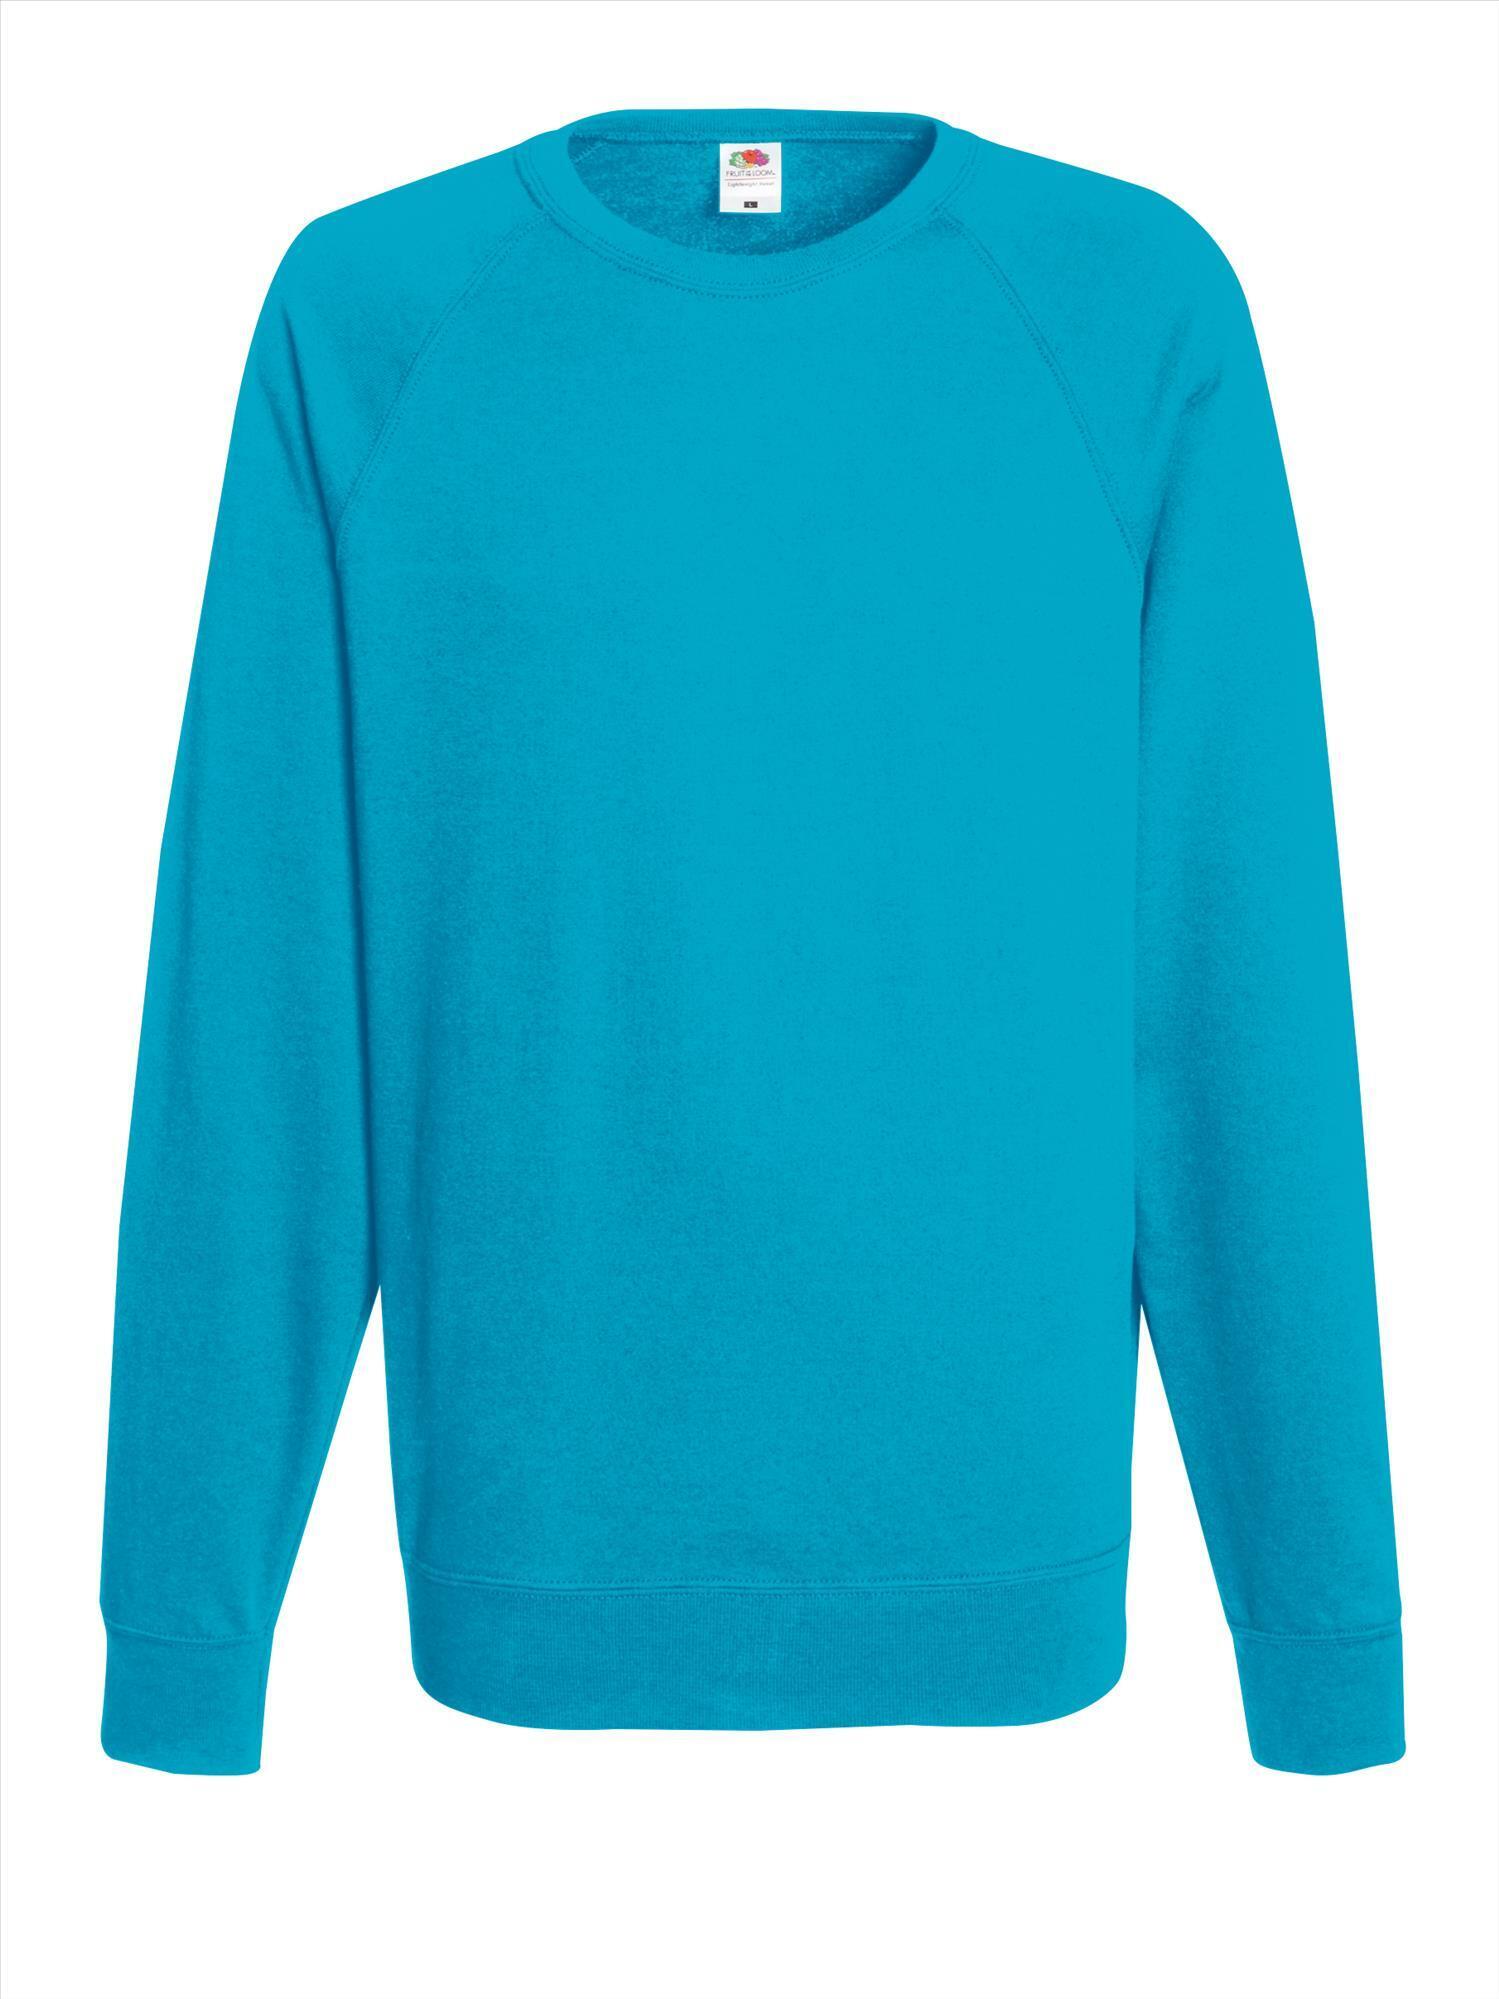 Azuur blauwe Trui sweater lichtgewicht unisex